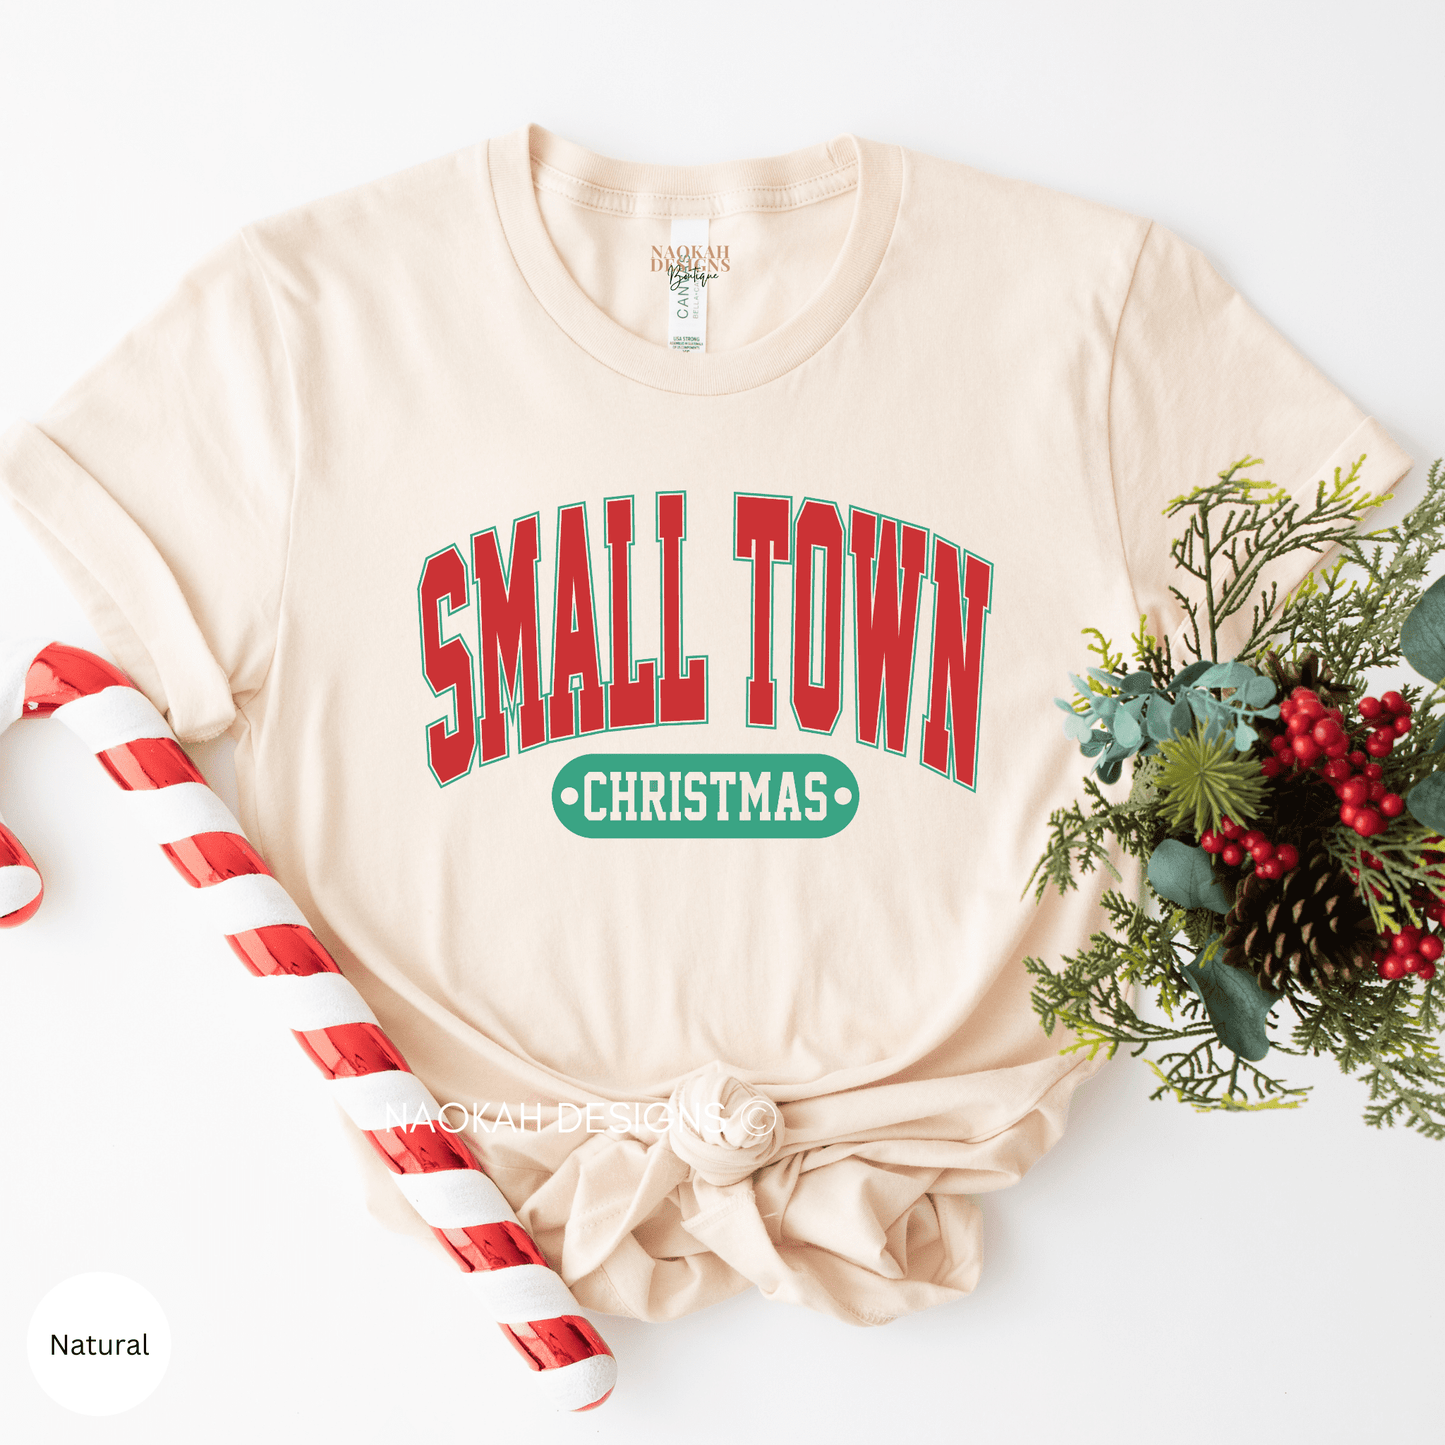 small town christmas shirt, women's christmas shirt, woman's holiday shirt, christmas gift, home town christmas shirt, cute holiday tee